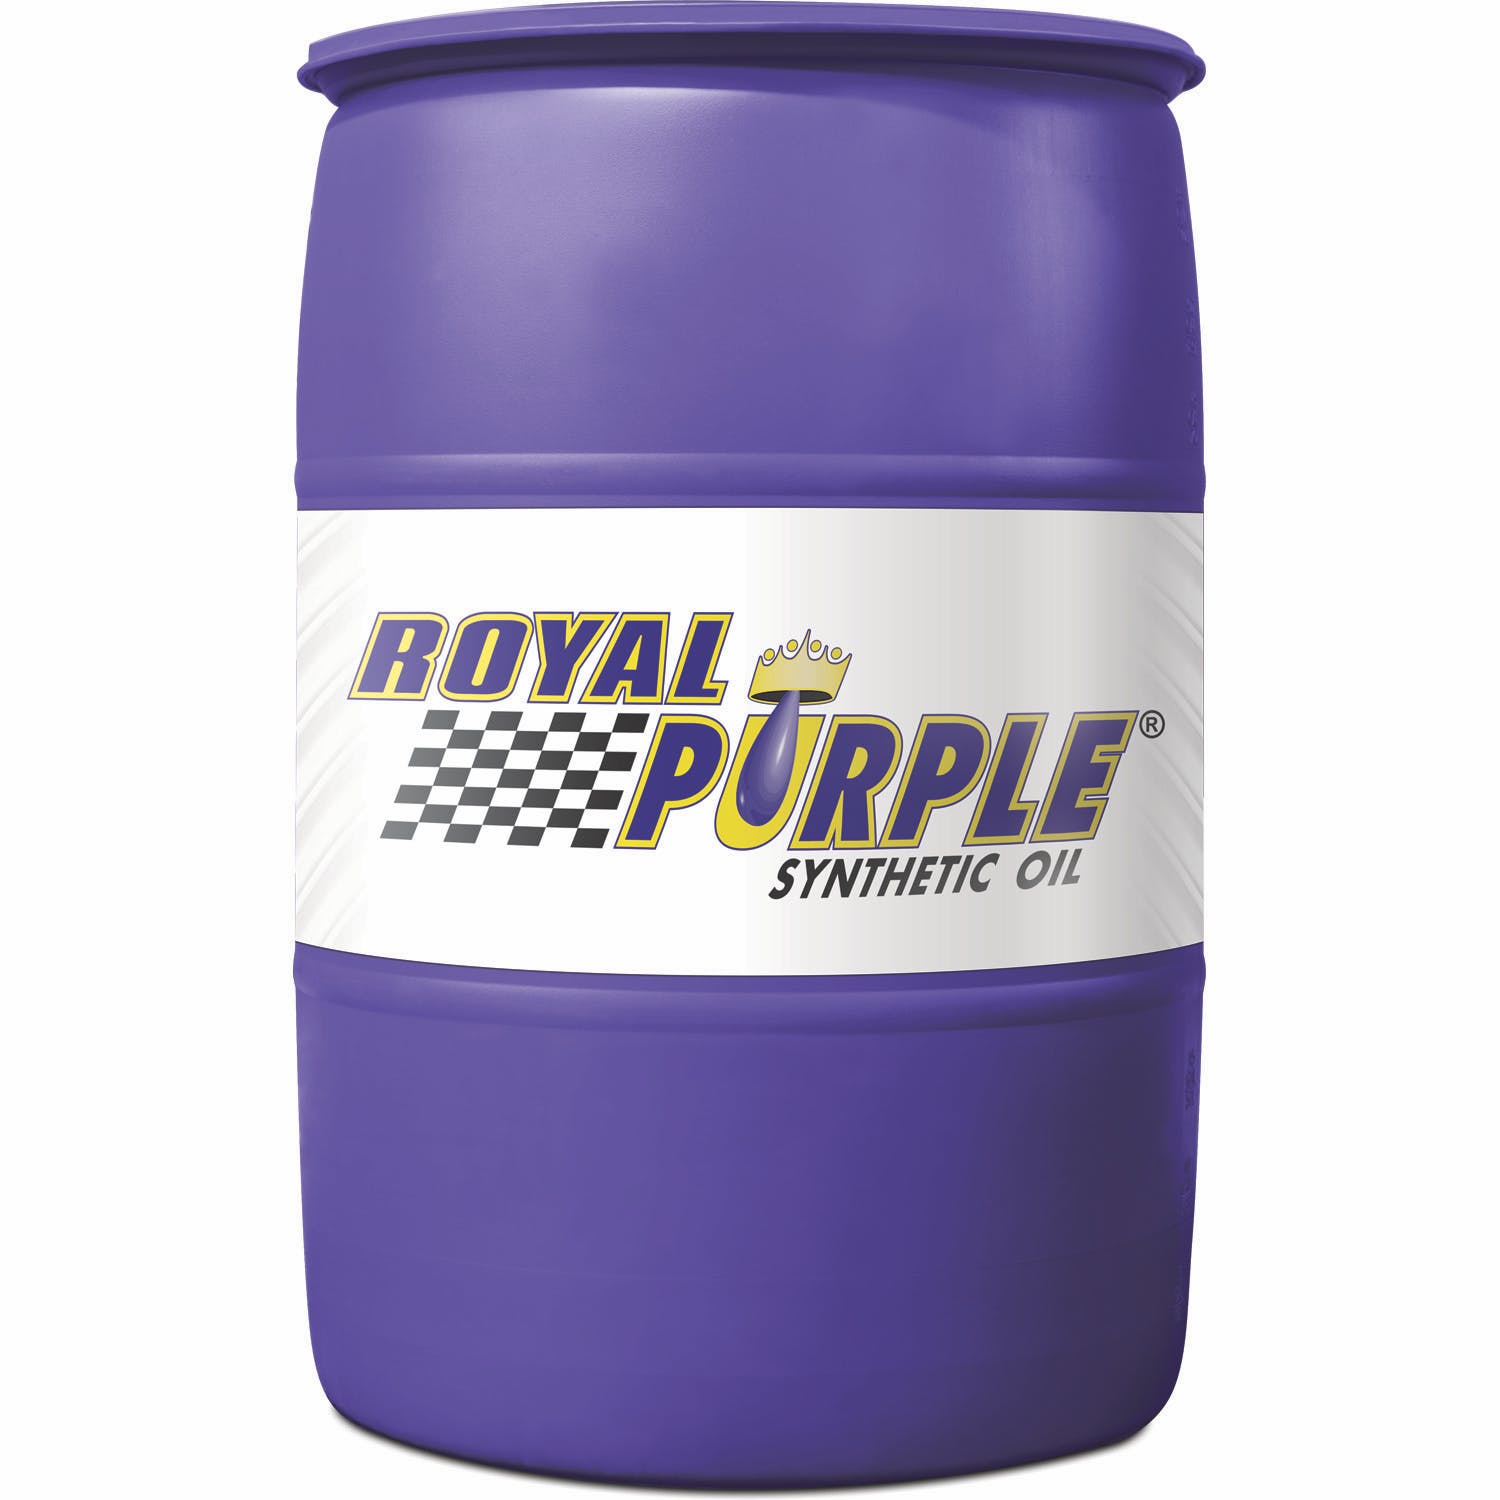 Royal Purple 37140 10W-40 HPS Engine Oil 55 gal Drum